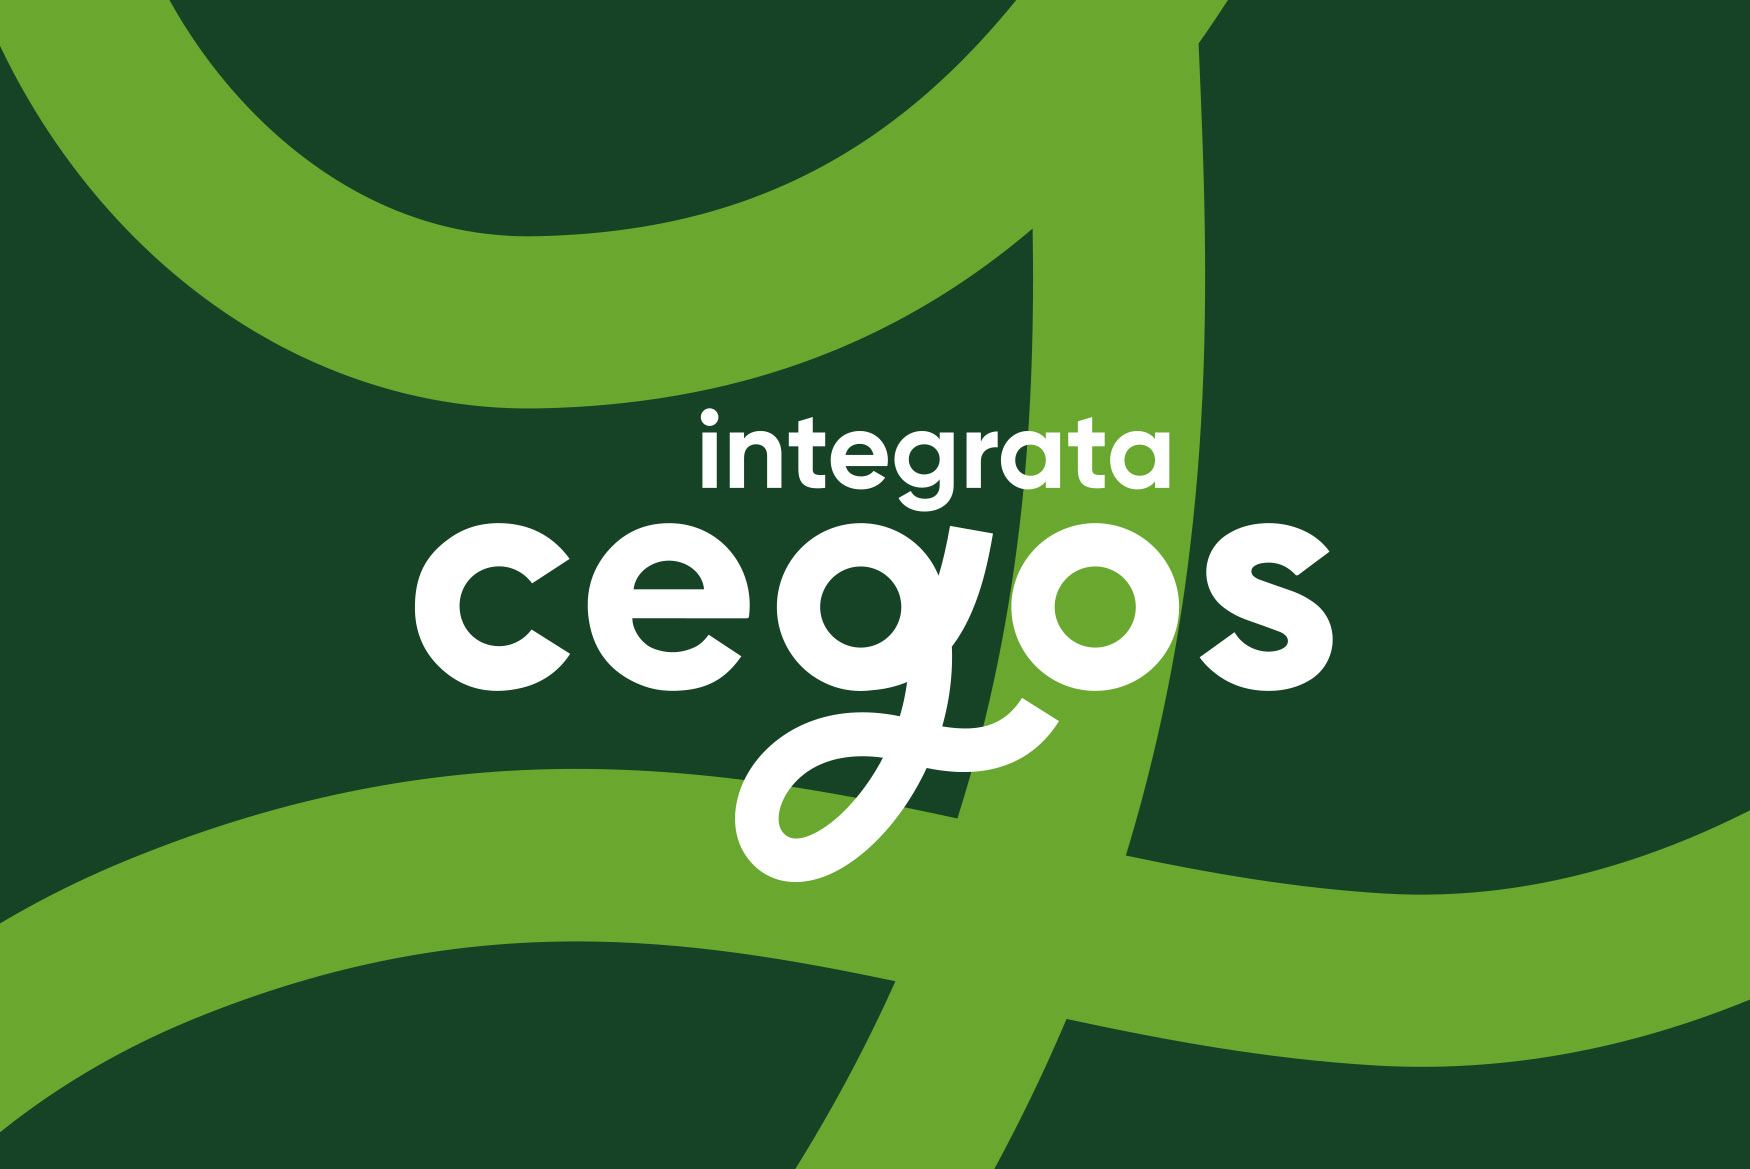 Corporate-Design-1-Cegos-Integrata-Designagentur-Stuttgart-Kreativbetrieb